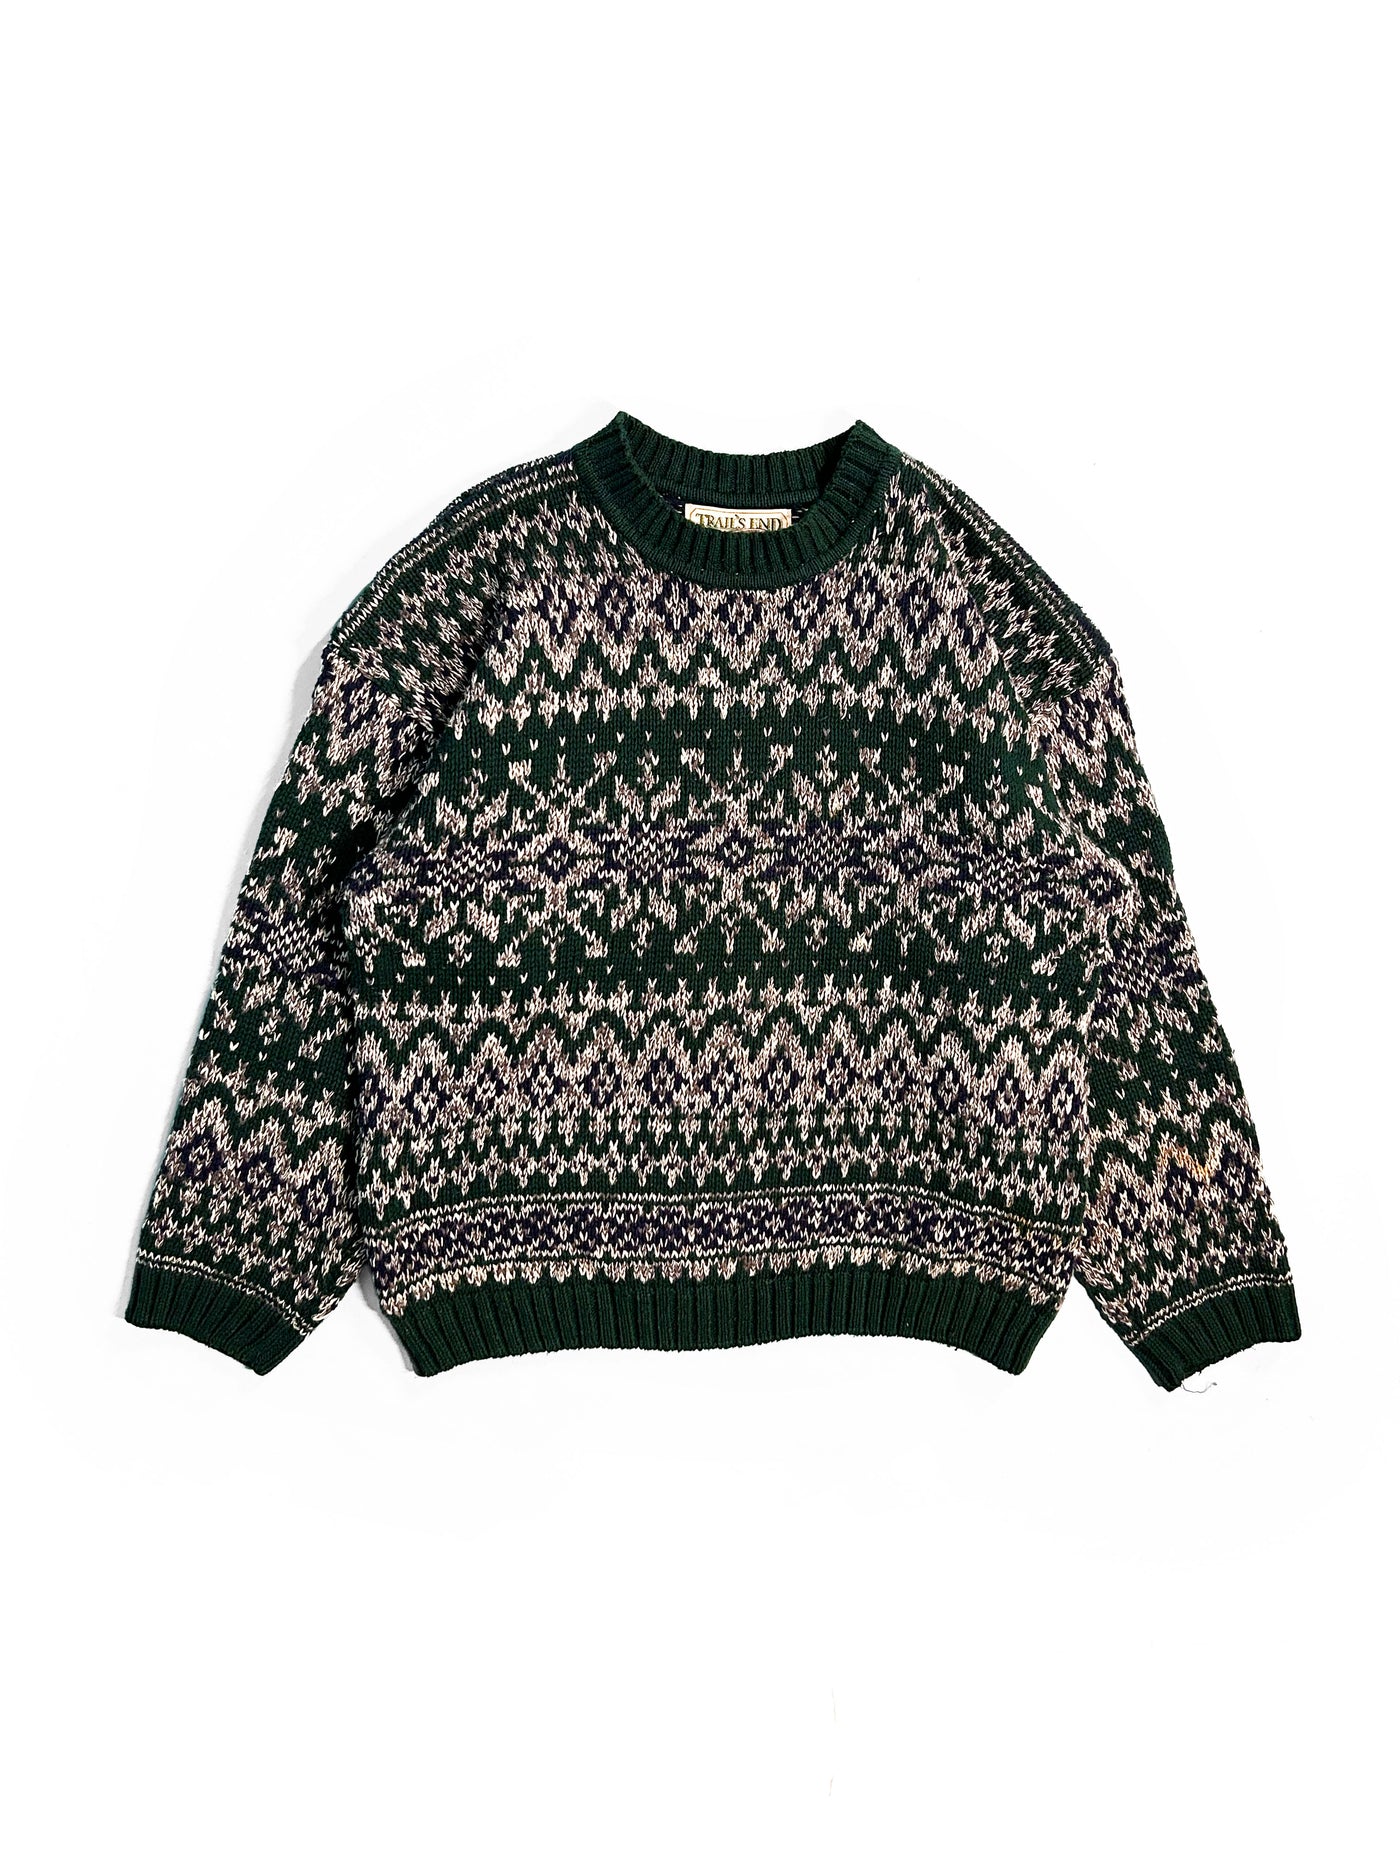 Vintage 90s Trails End Patterned Sweater